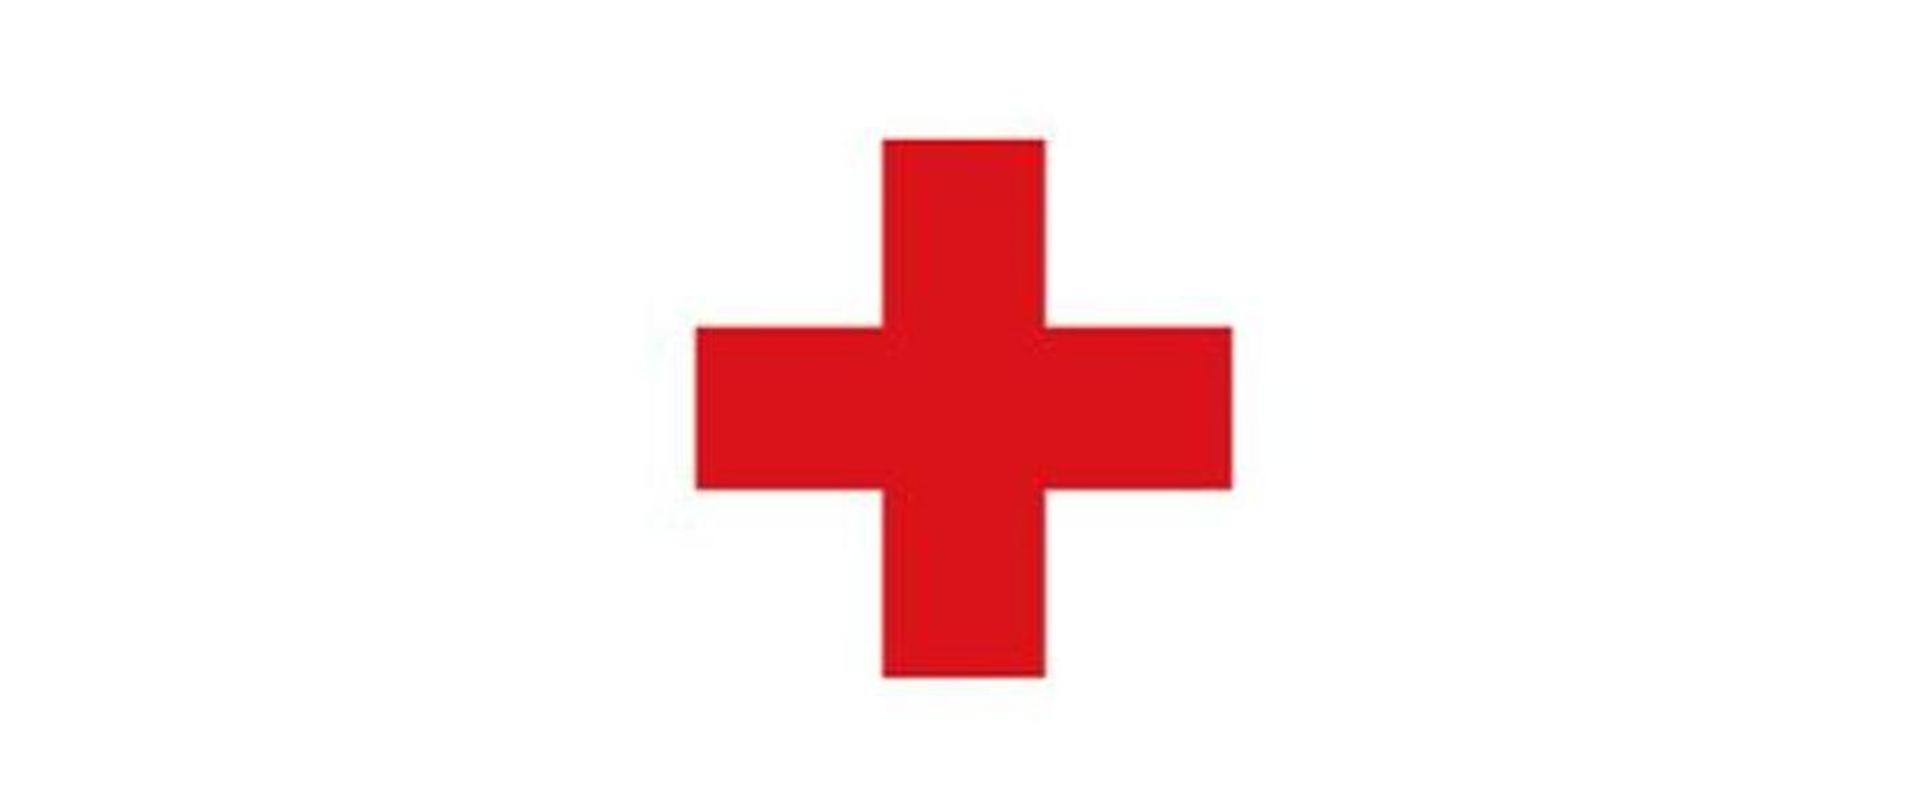 Zdjęcie przedstawia symbol czerwonego krzyża